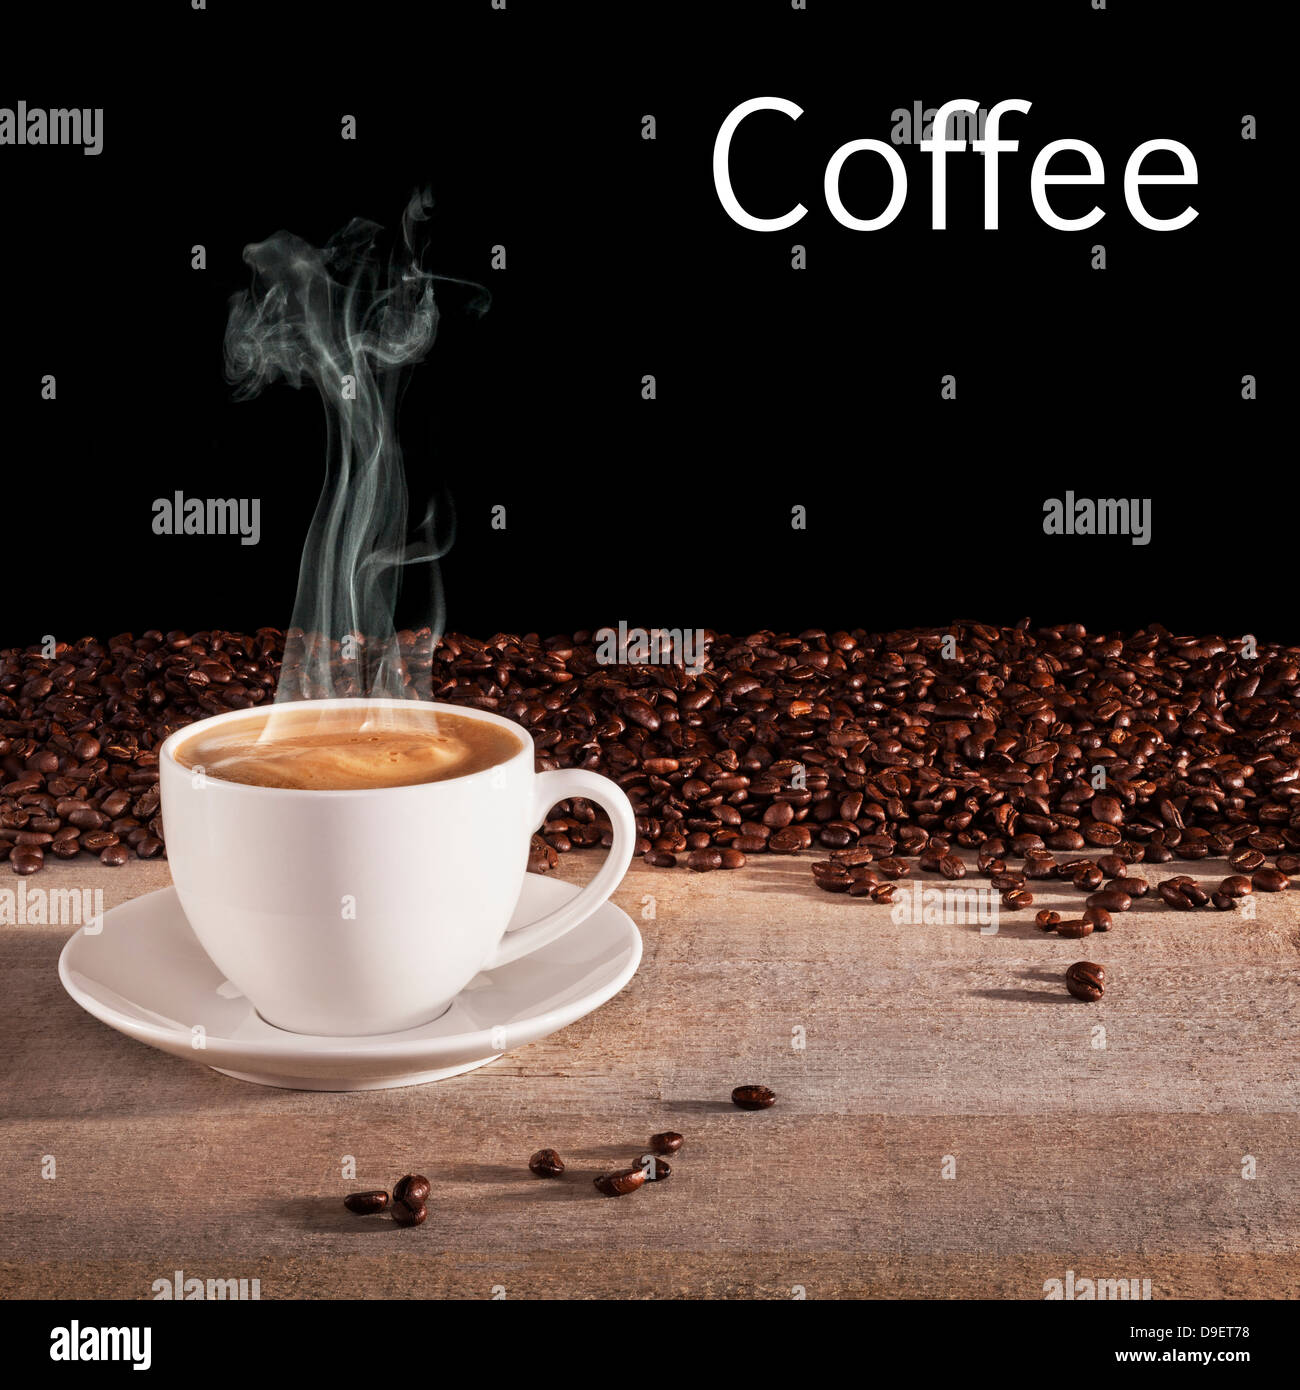 Concetto di caffè - una tazza di caffè espresso con vapore visibile aumento, su un sfondo rustico con carni arrosto di chicchi di caffè e... Foto Stock